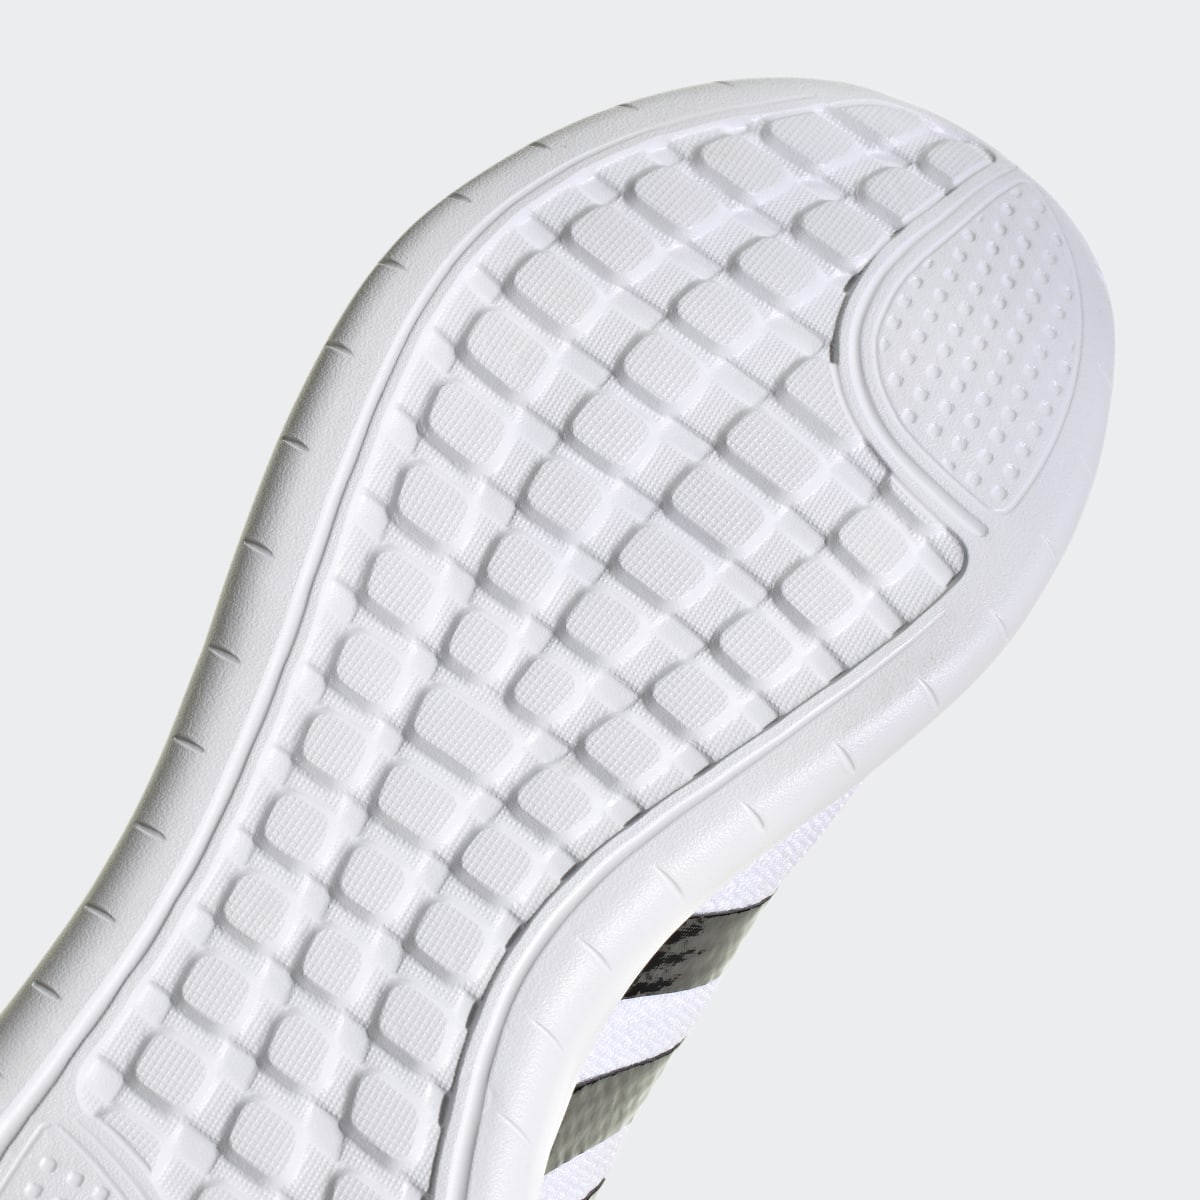 Adidas QT Racer 3.0 Shoes. 9